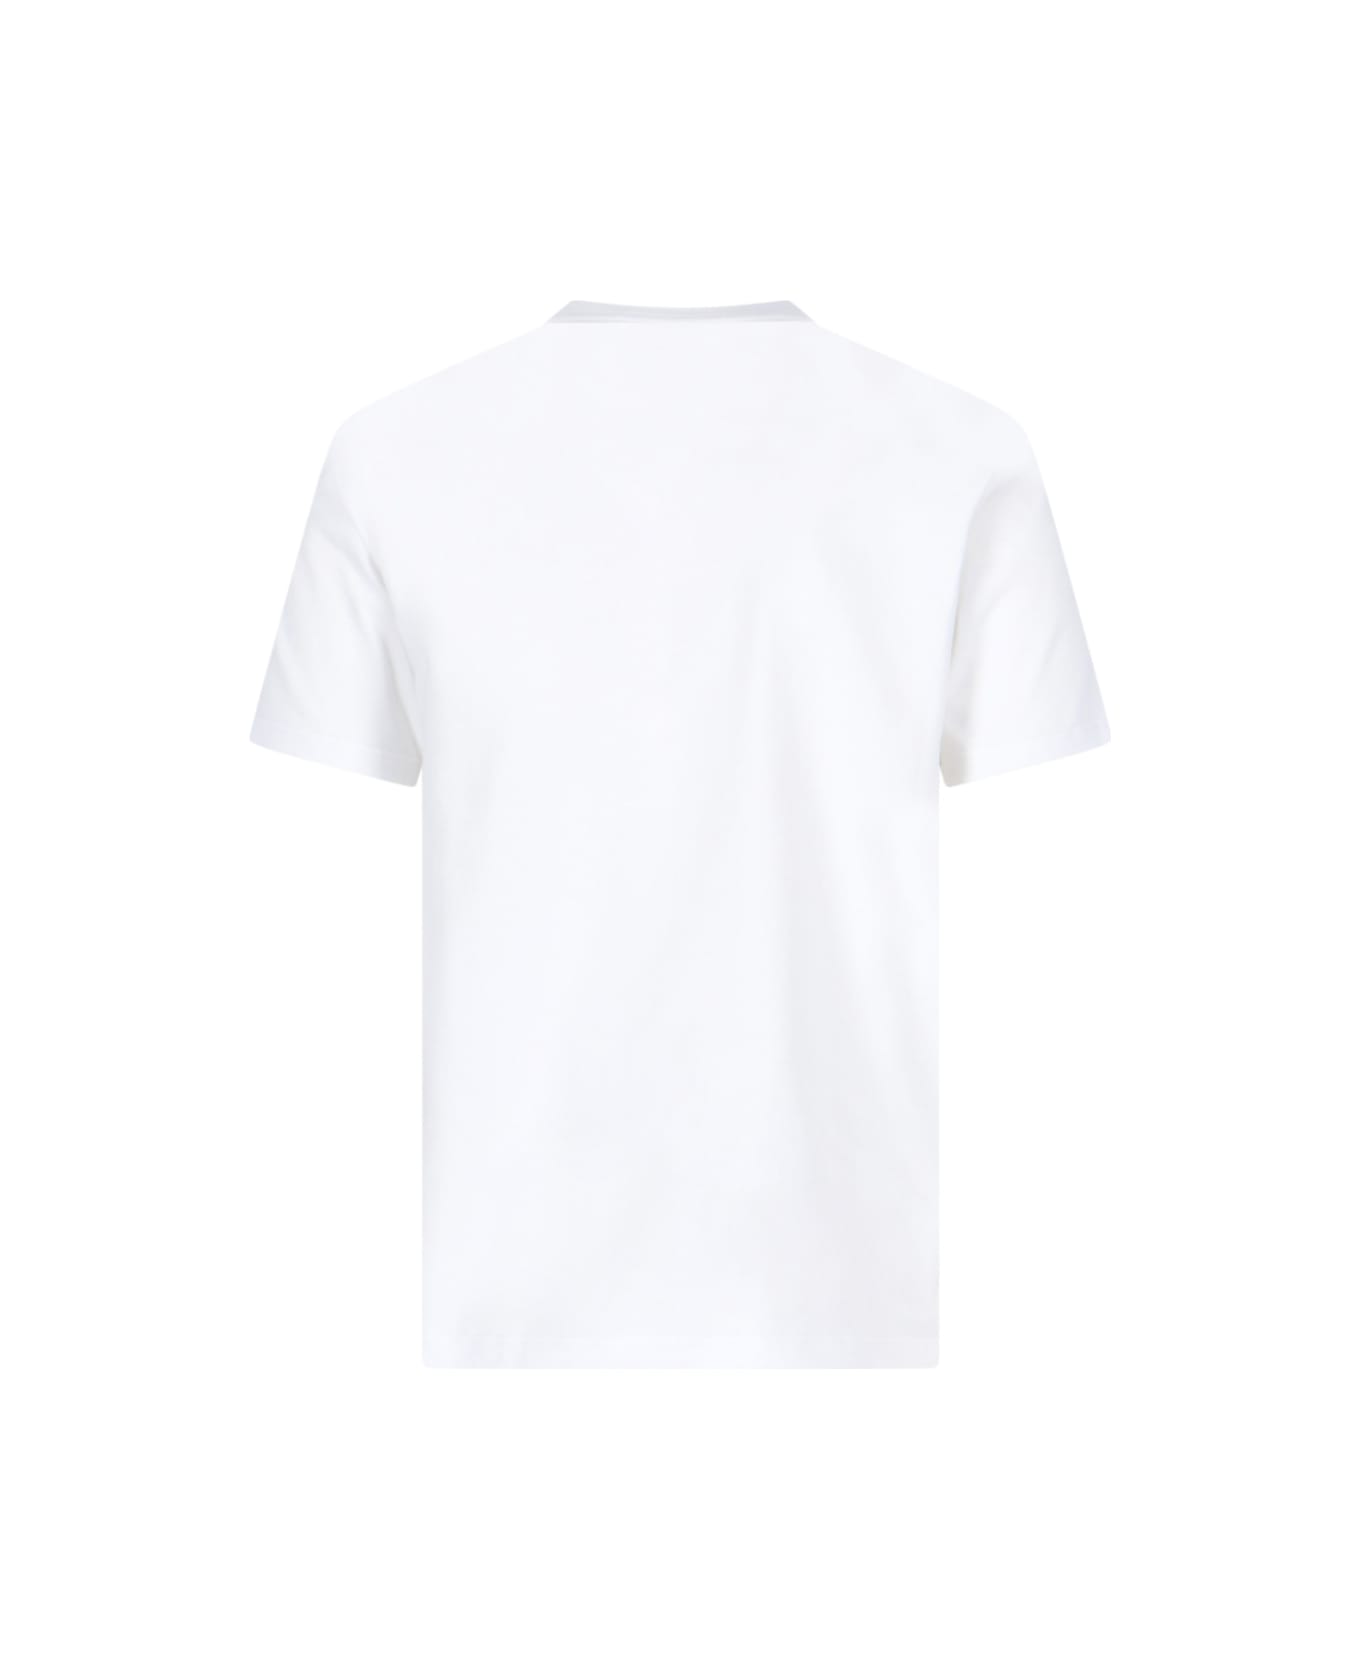 Alexander McQueen 'varsity' T-shirt - White シャツ